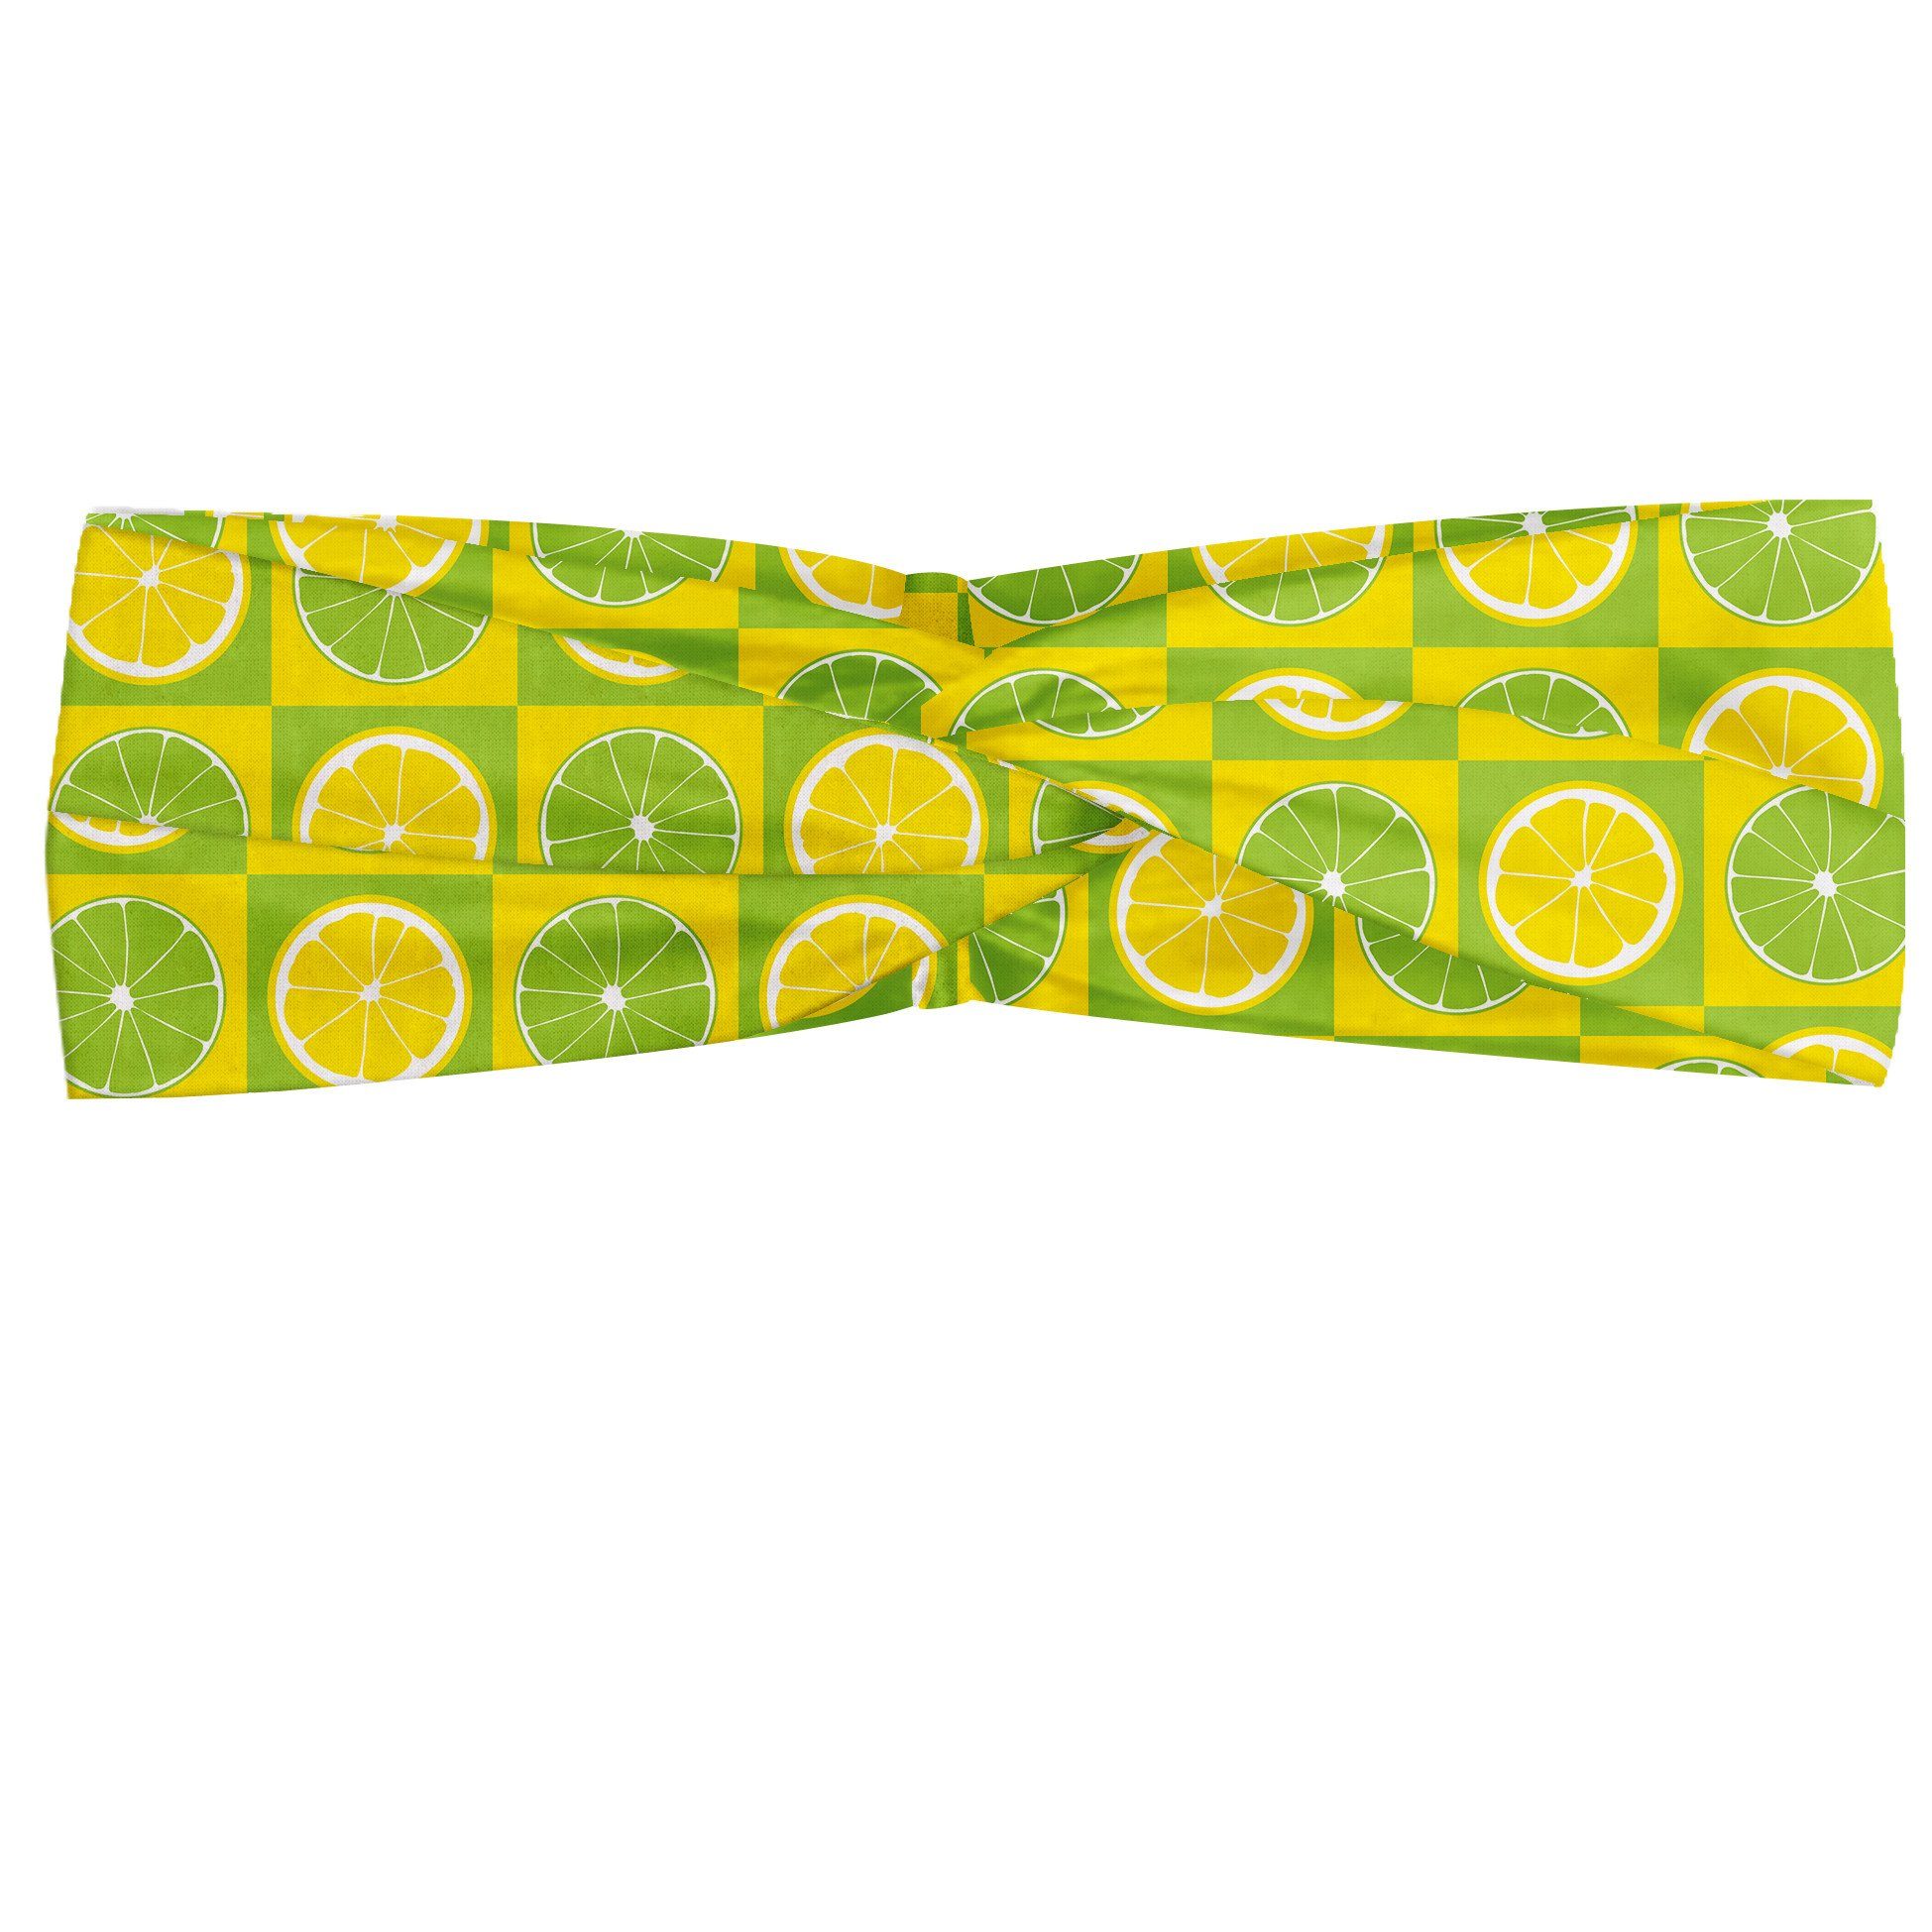 Abakuhaus Stirnband Elastisch und Angenehme alltags accessories Lime Green Lemon Lime Pop-Art